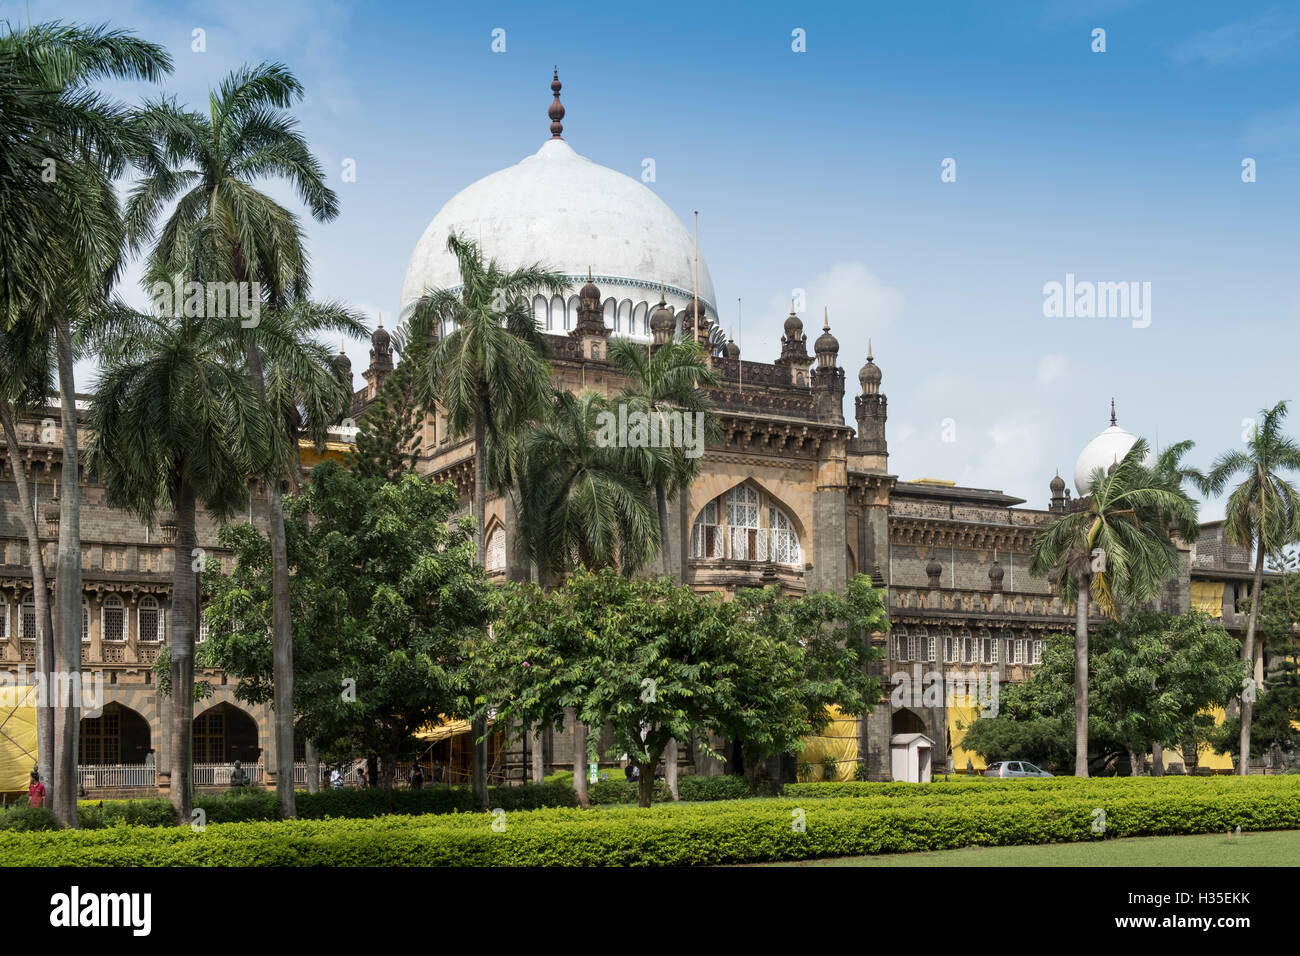 Chhatrapati Shivaji Maharaj Vastu Sangrahalaya (Prince of Wales Museum of Western India), Mumbai (Bombay), Maharashtra, India Stock Photo